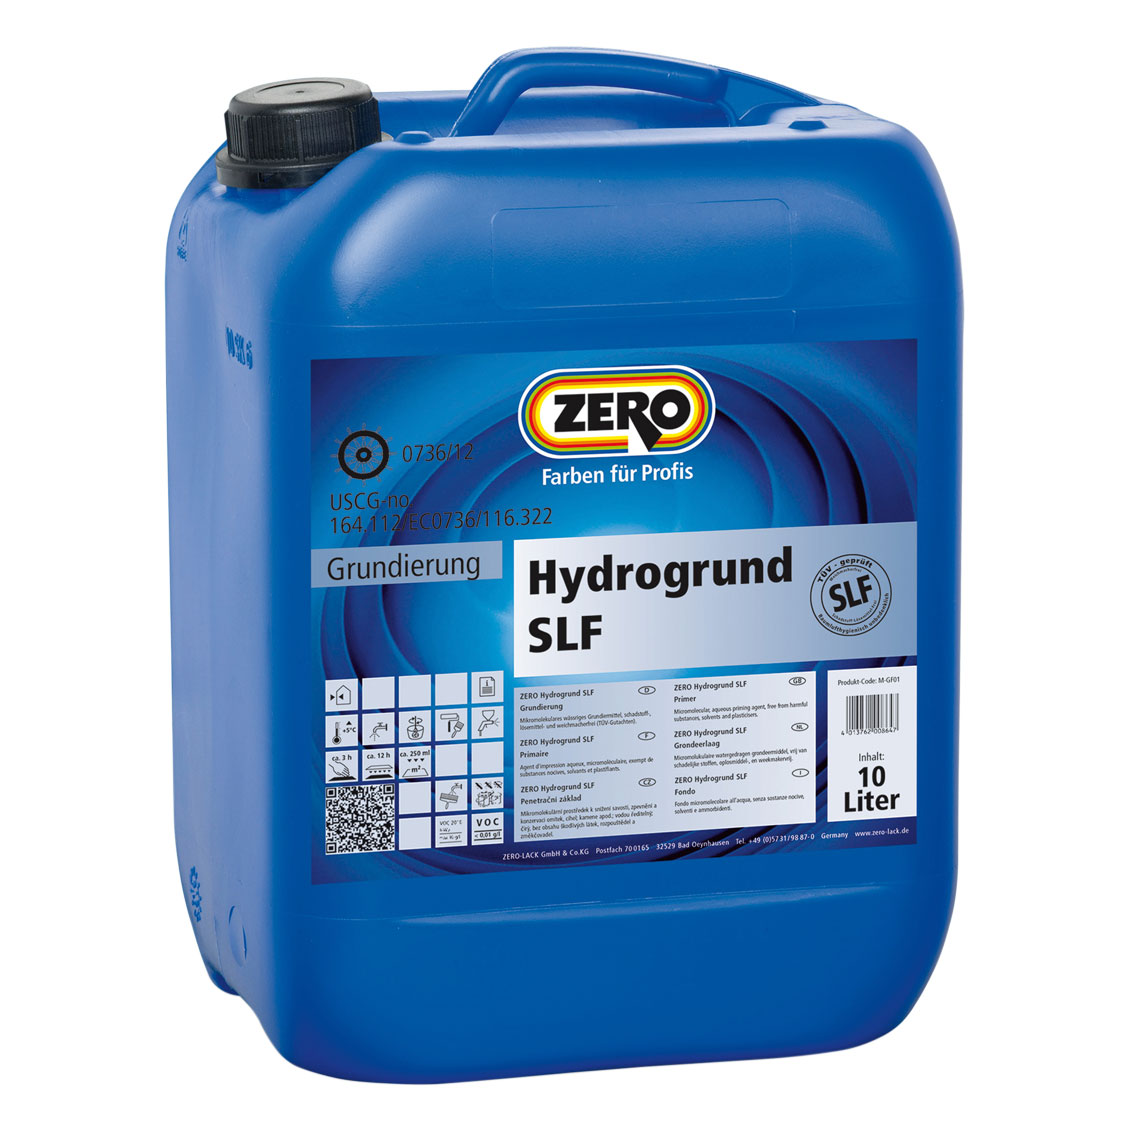 ZERO-LACK Hydrogrund SLF, Transparent